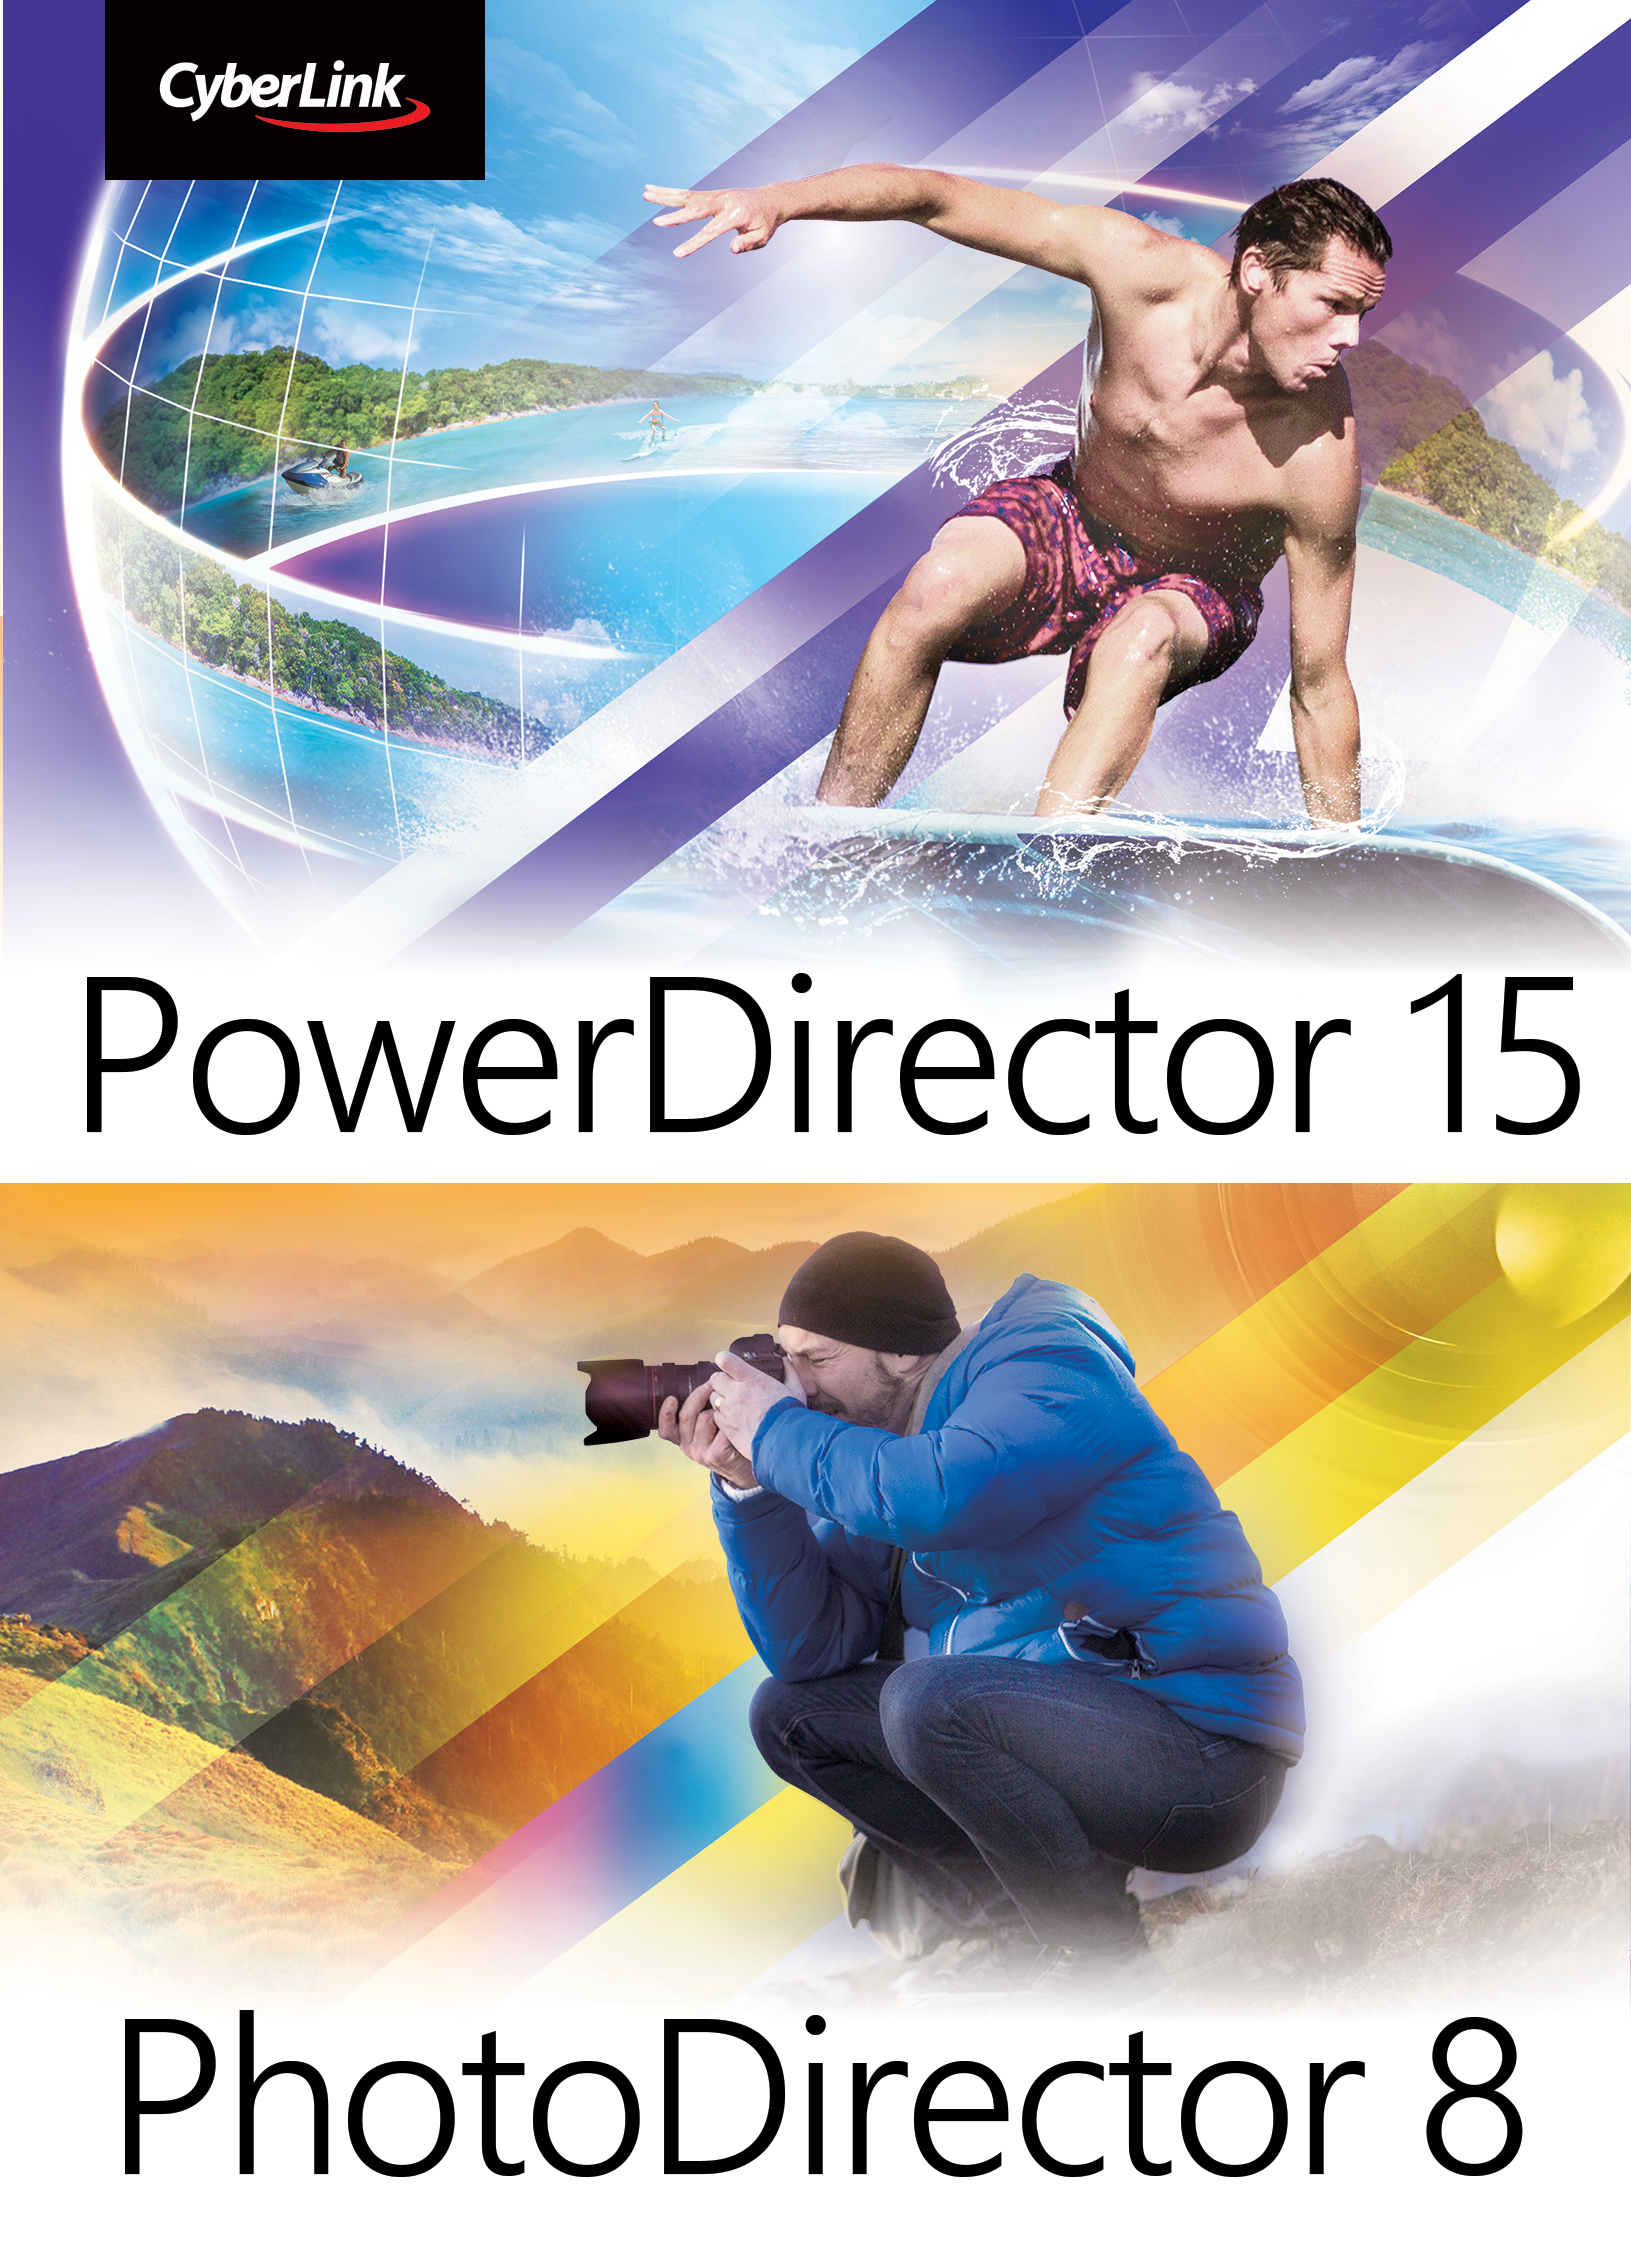 CyberLink PhotoDirector 8 & PowerDirector 15 Ultimate Duo [Download]